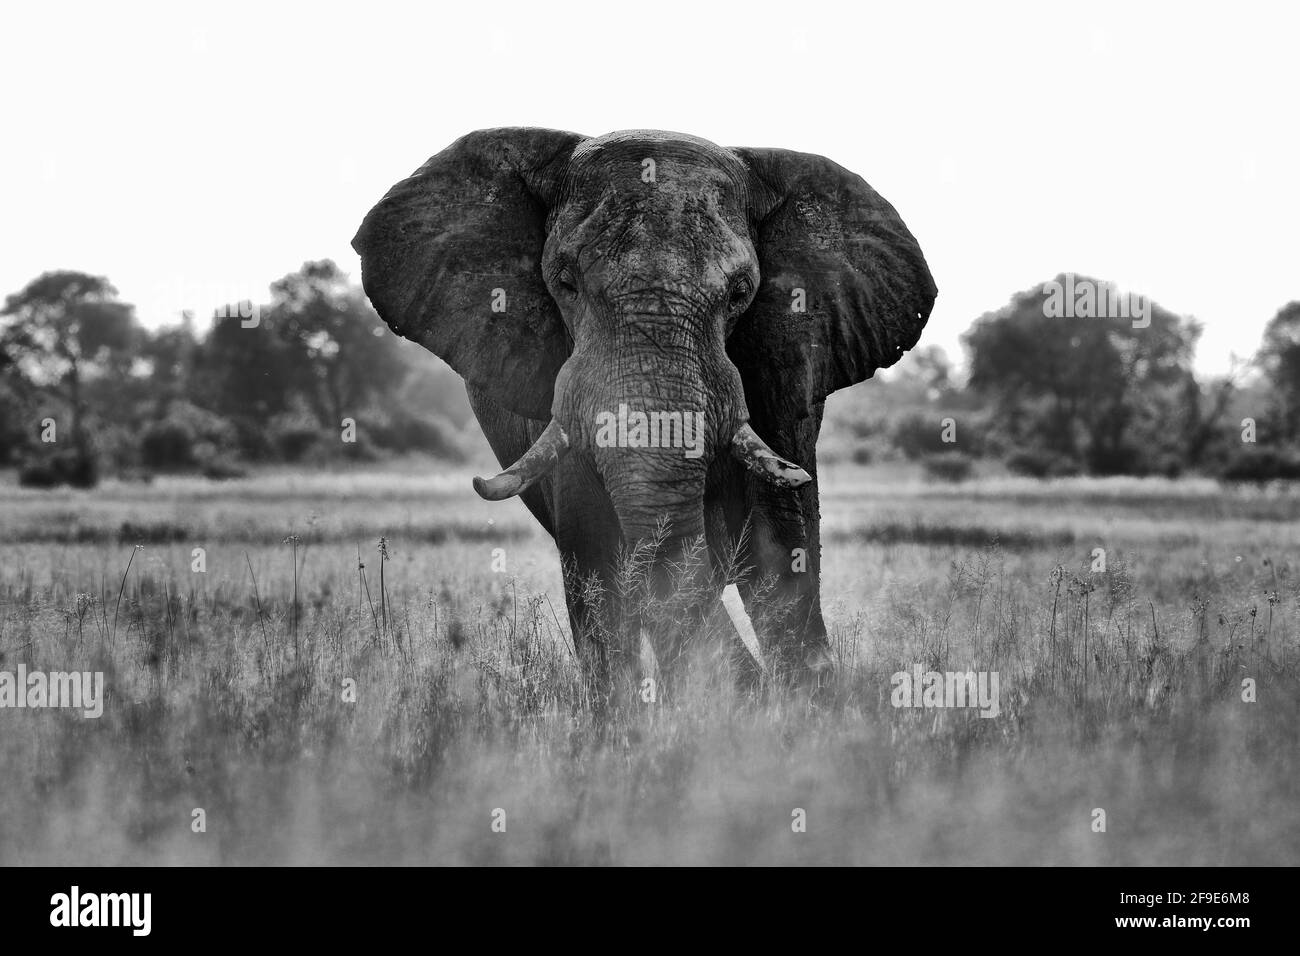 Safari africano. Elefante en la hierba. Vida silvestre escena de la naturaleza, elefante en el hábitat, Moremi, delta Okavango, Botswana, África. Blanco y negro Foto de stock